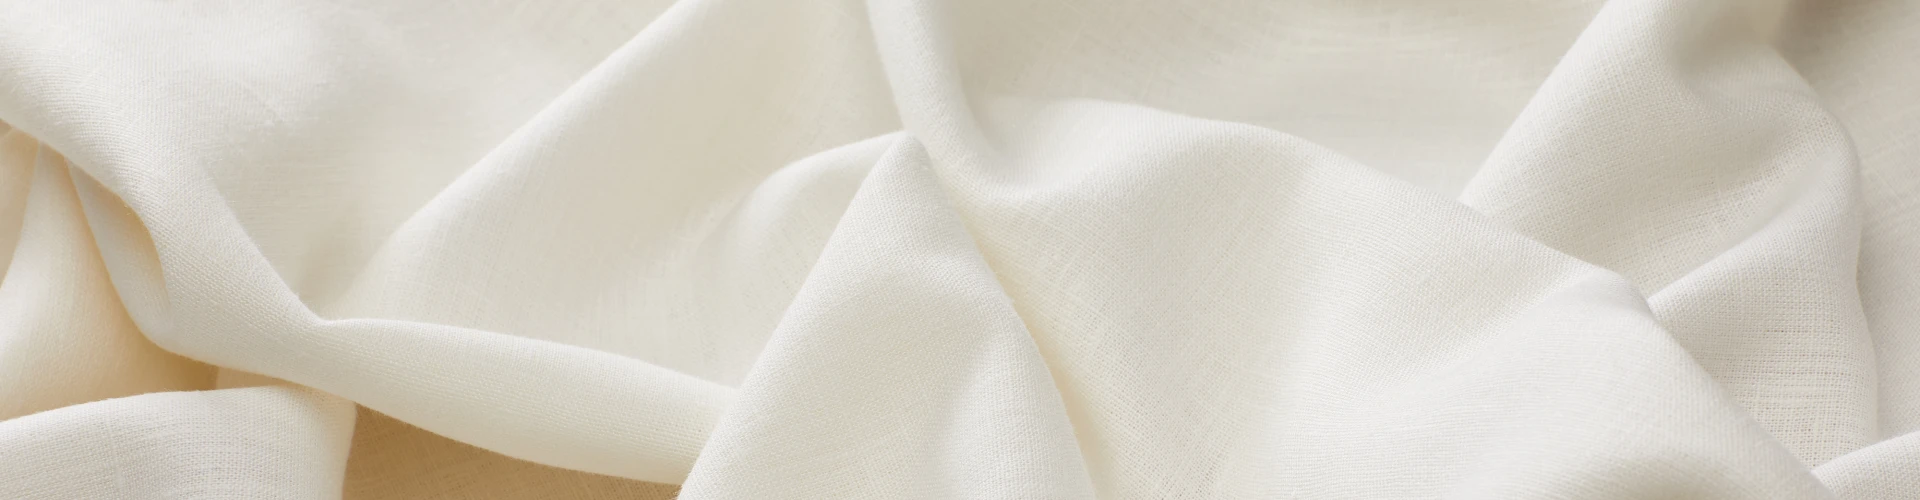 Cotton-Linen